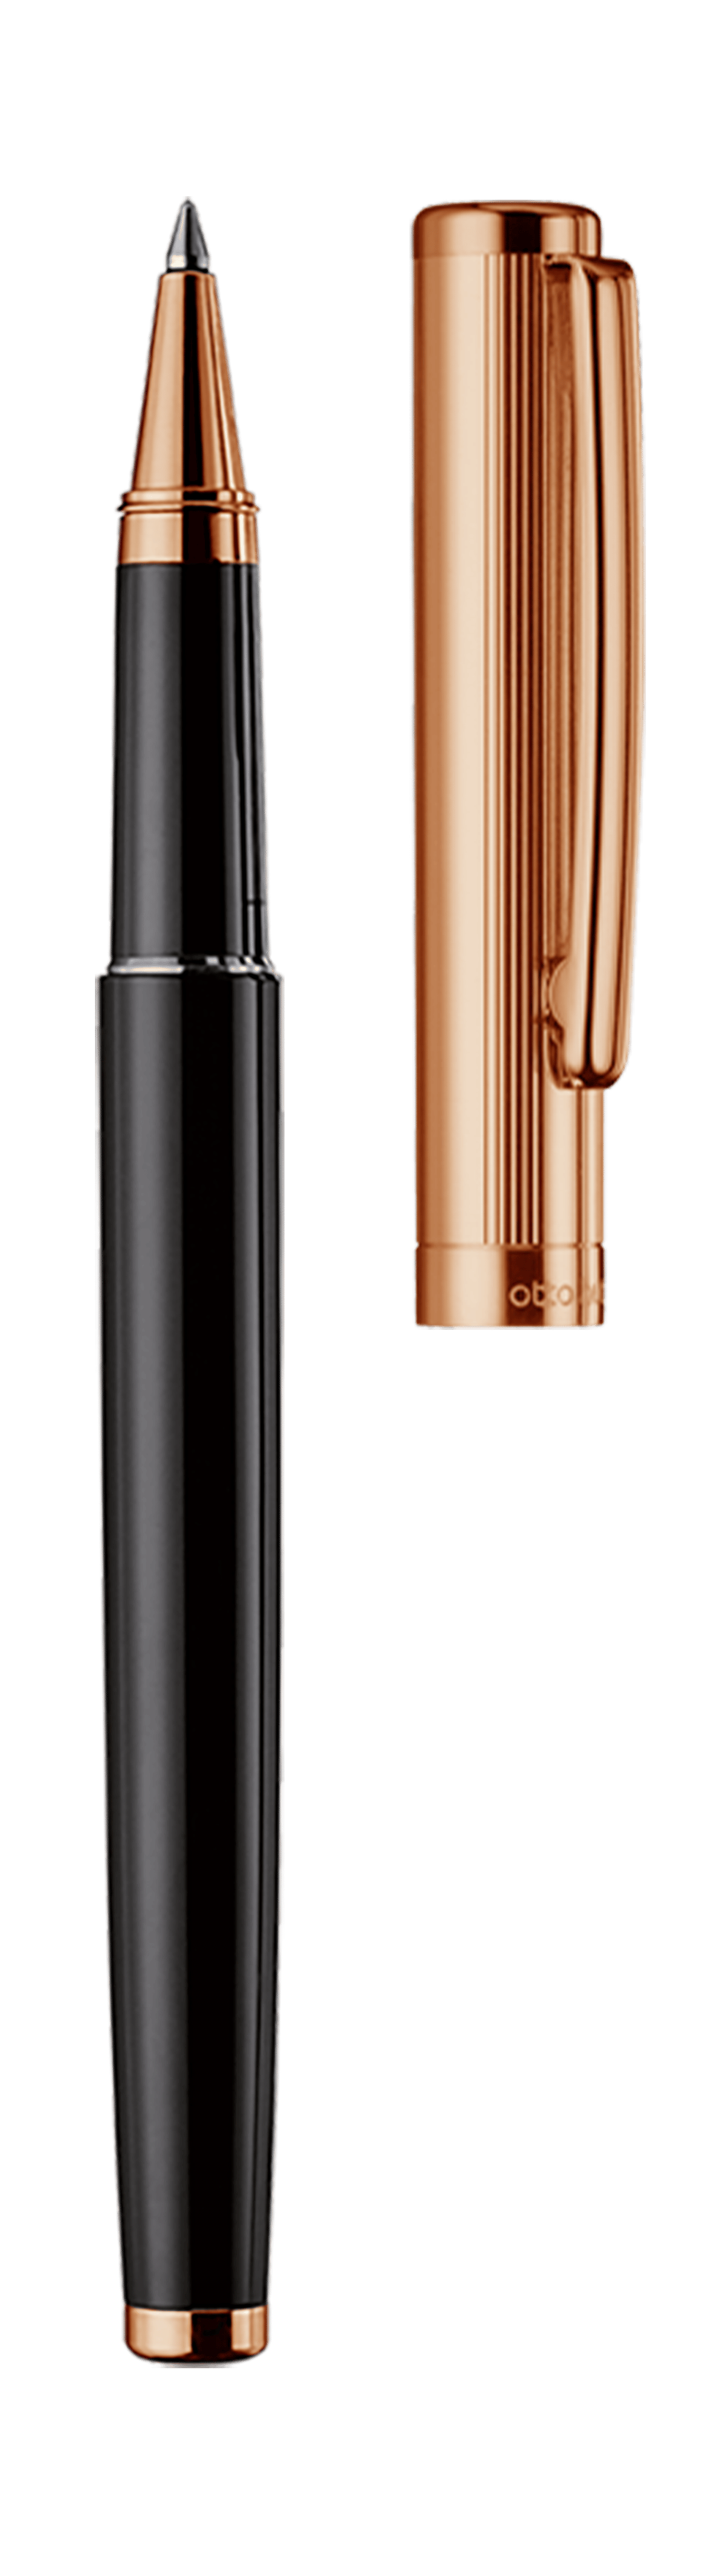 Tintenroller schwarz lackiert/rosè vergoldet - Design 01